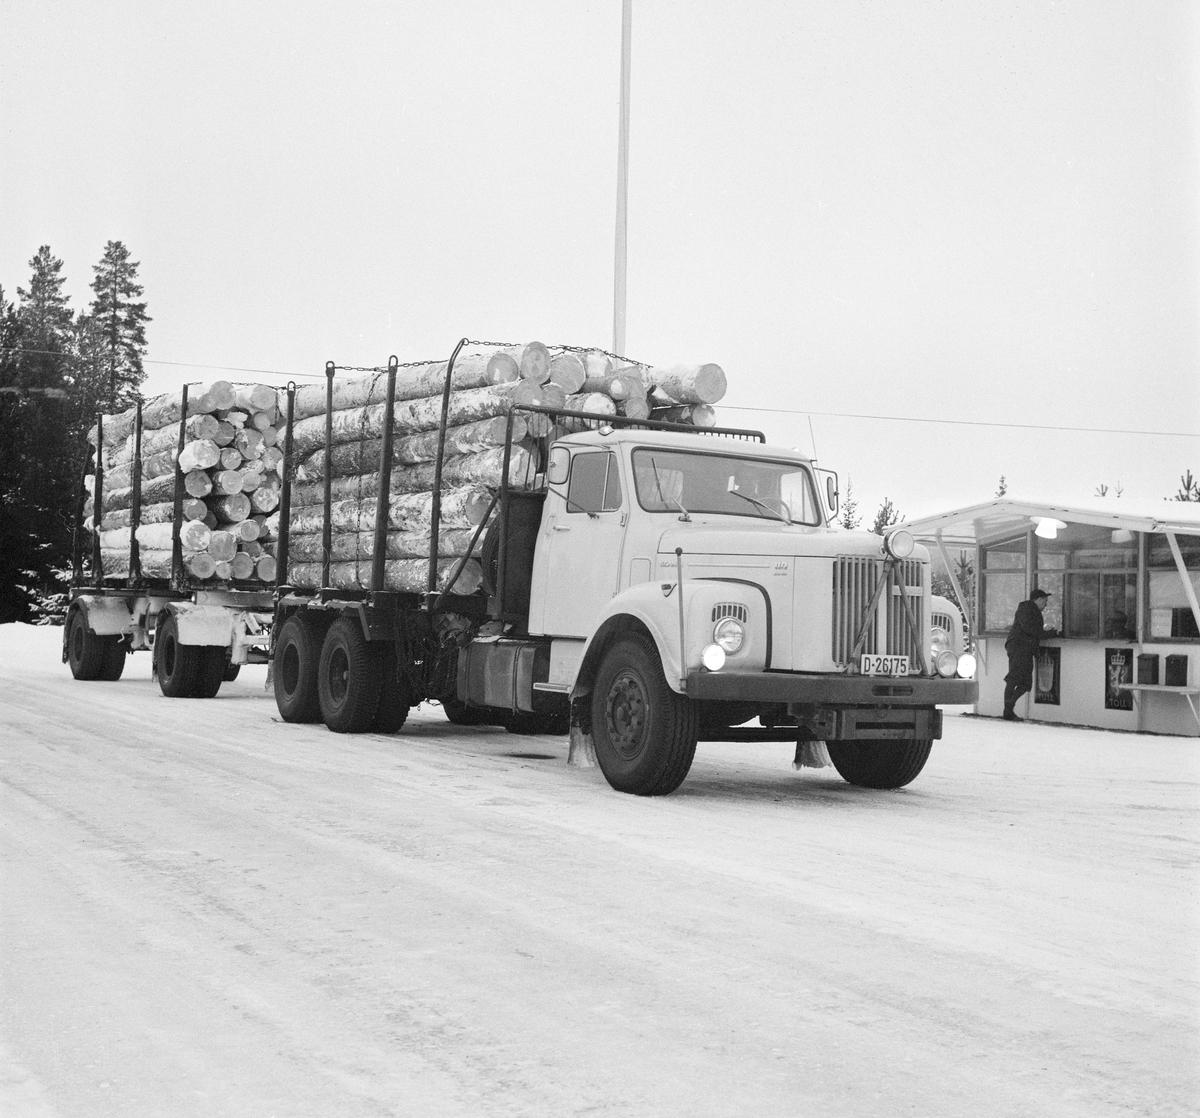 Transport av tømmer med lastebil fra Sverige til Norge. Trysil, Hedmark.